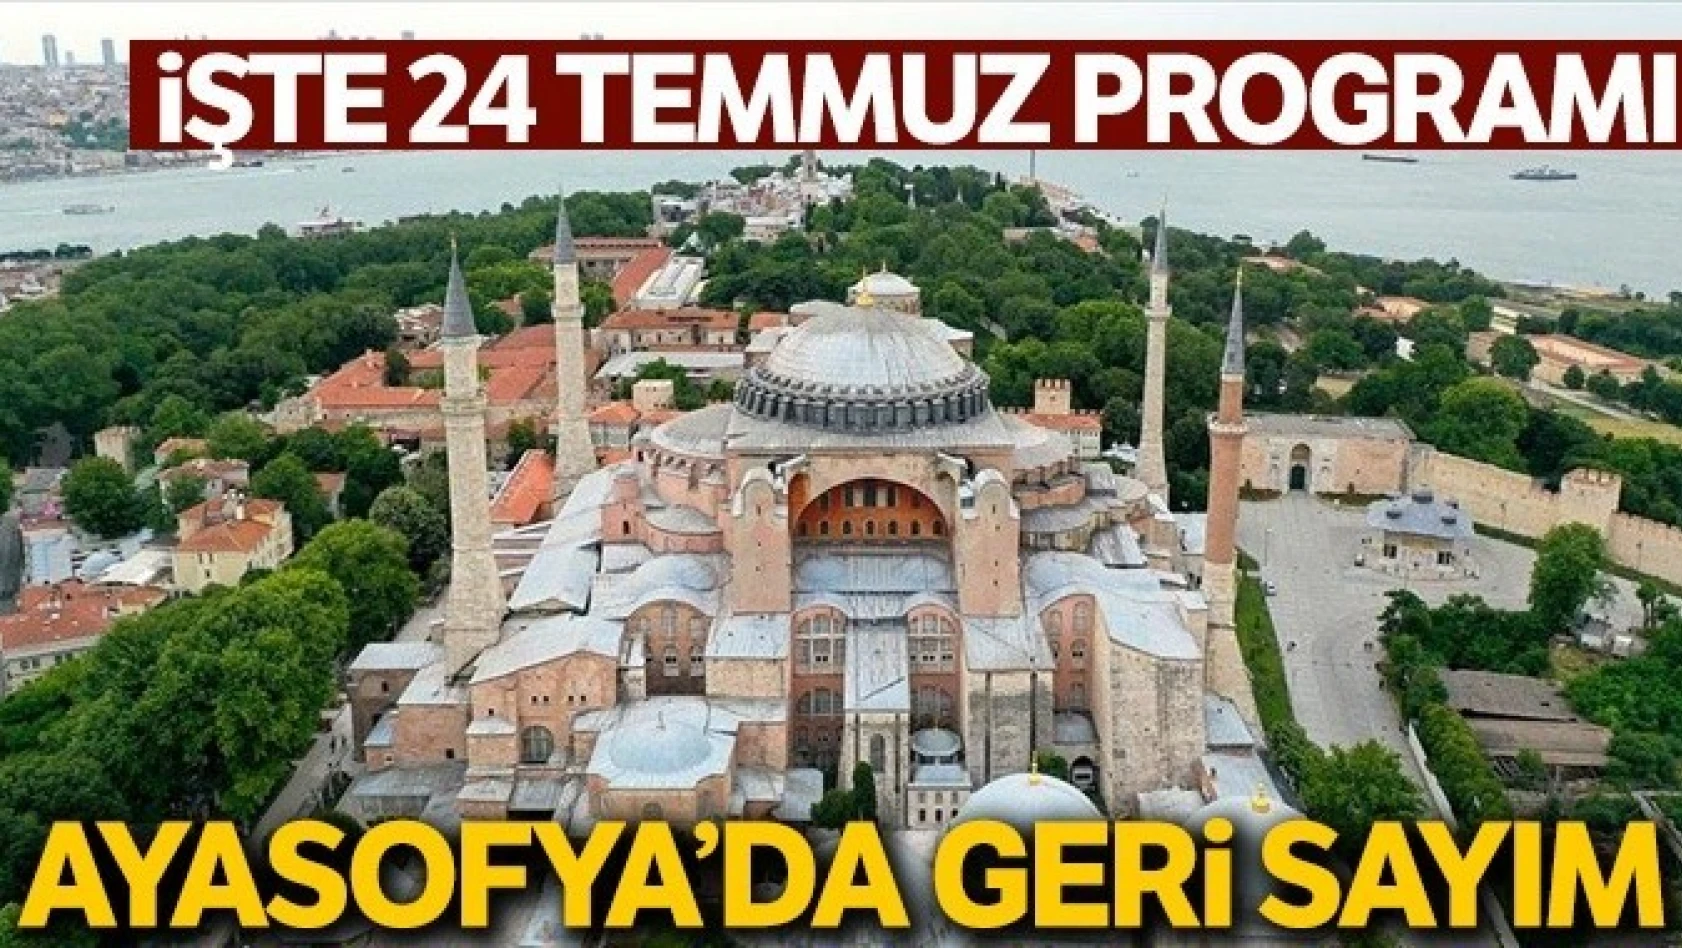 Ayasofya Camii, 24 Temmuz'a Hazırlanıyor